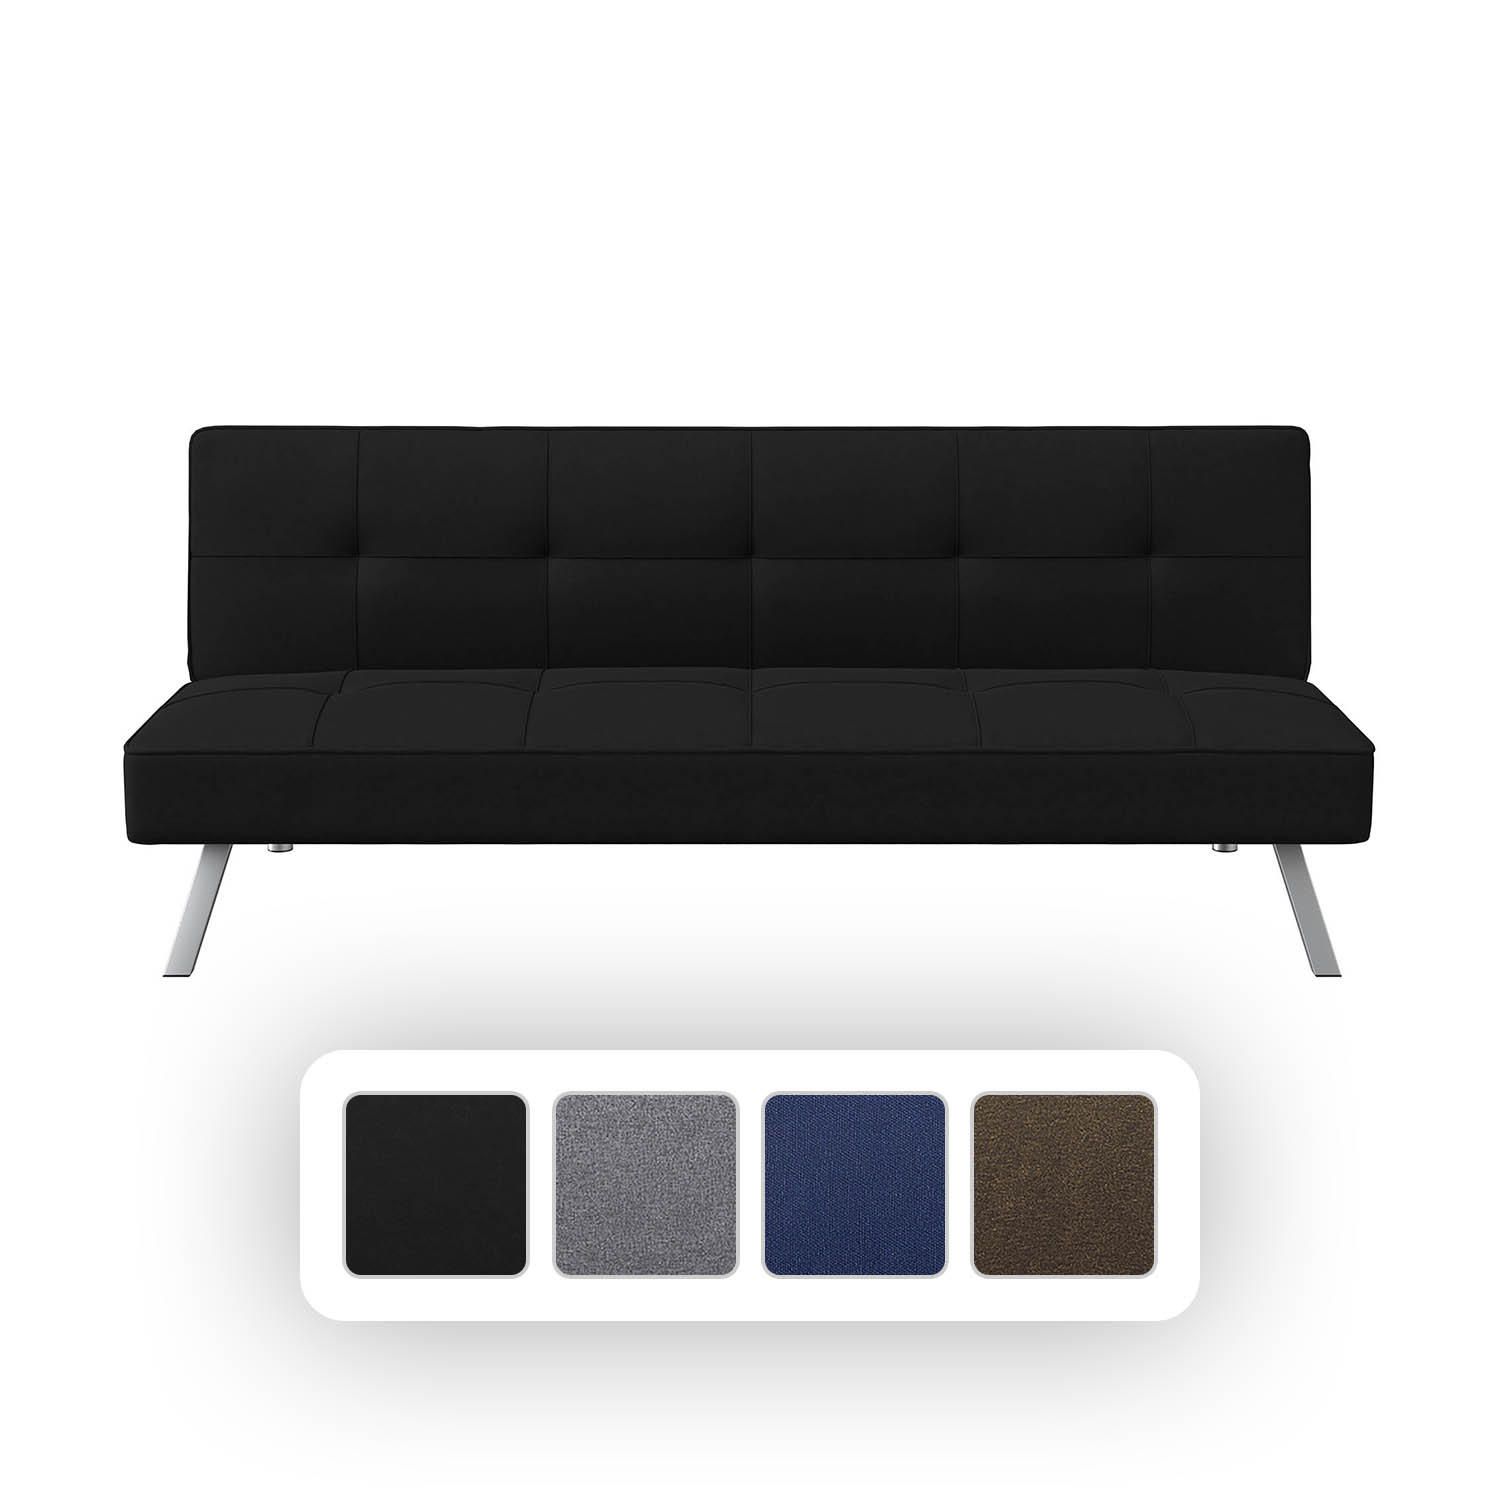 Serta Crestview Convertible Sofa in Premium Fabric, Assorted Colors | Sam's Club